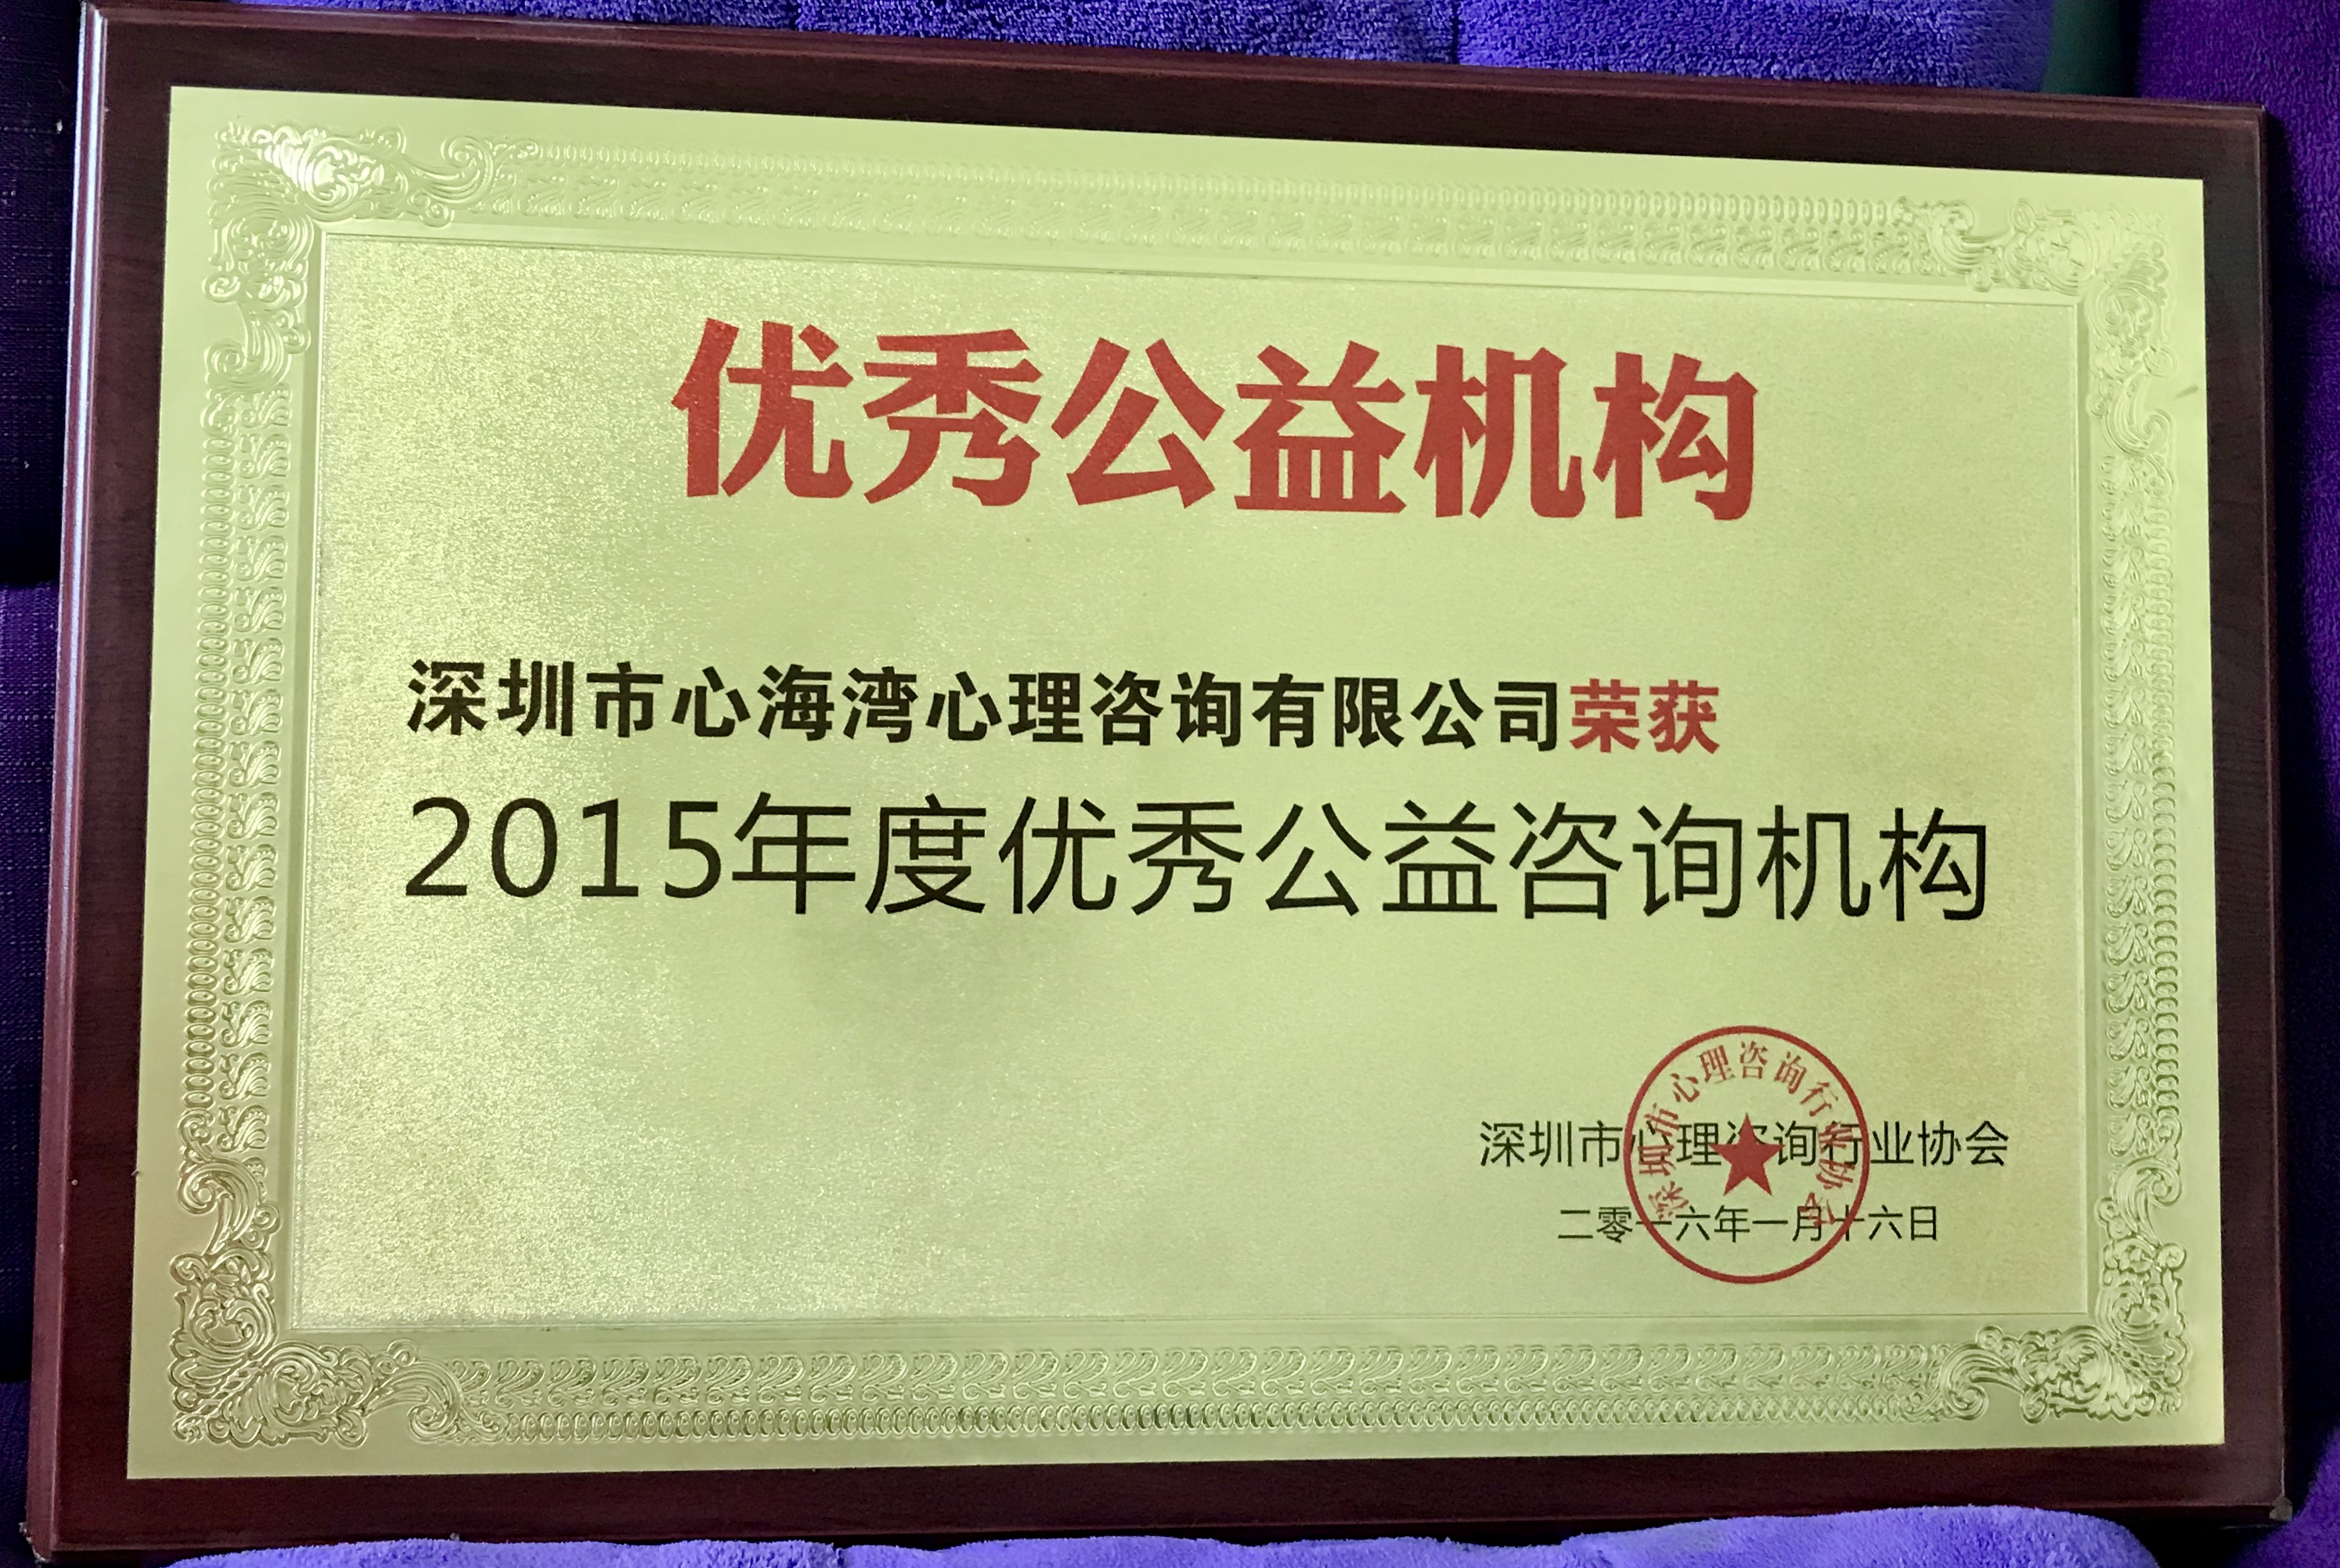 深圳市心理咨询行业协会2015年度优秀公益咨询机构